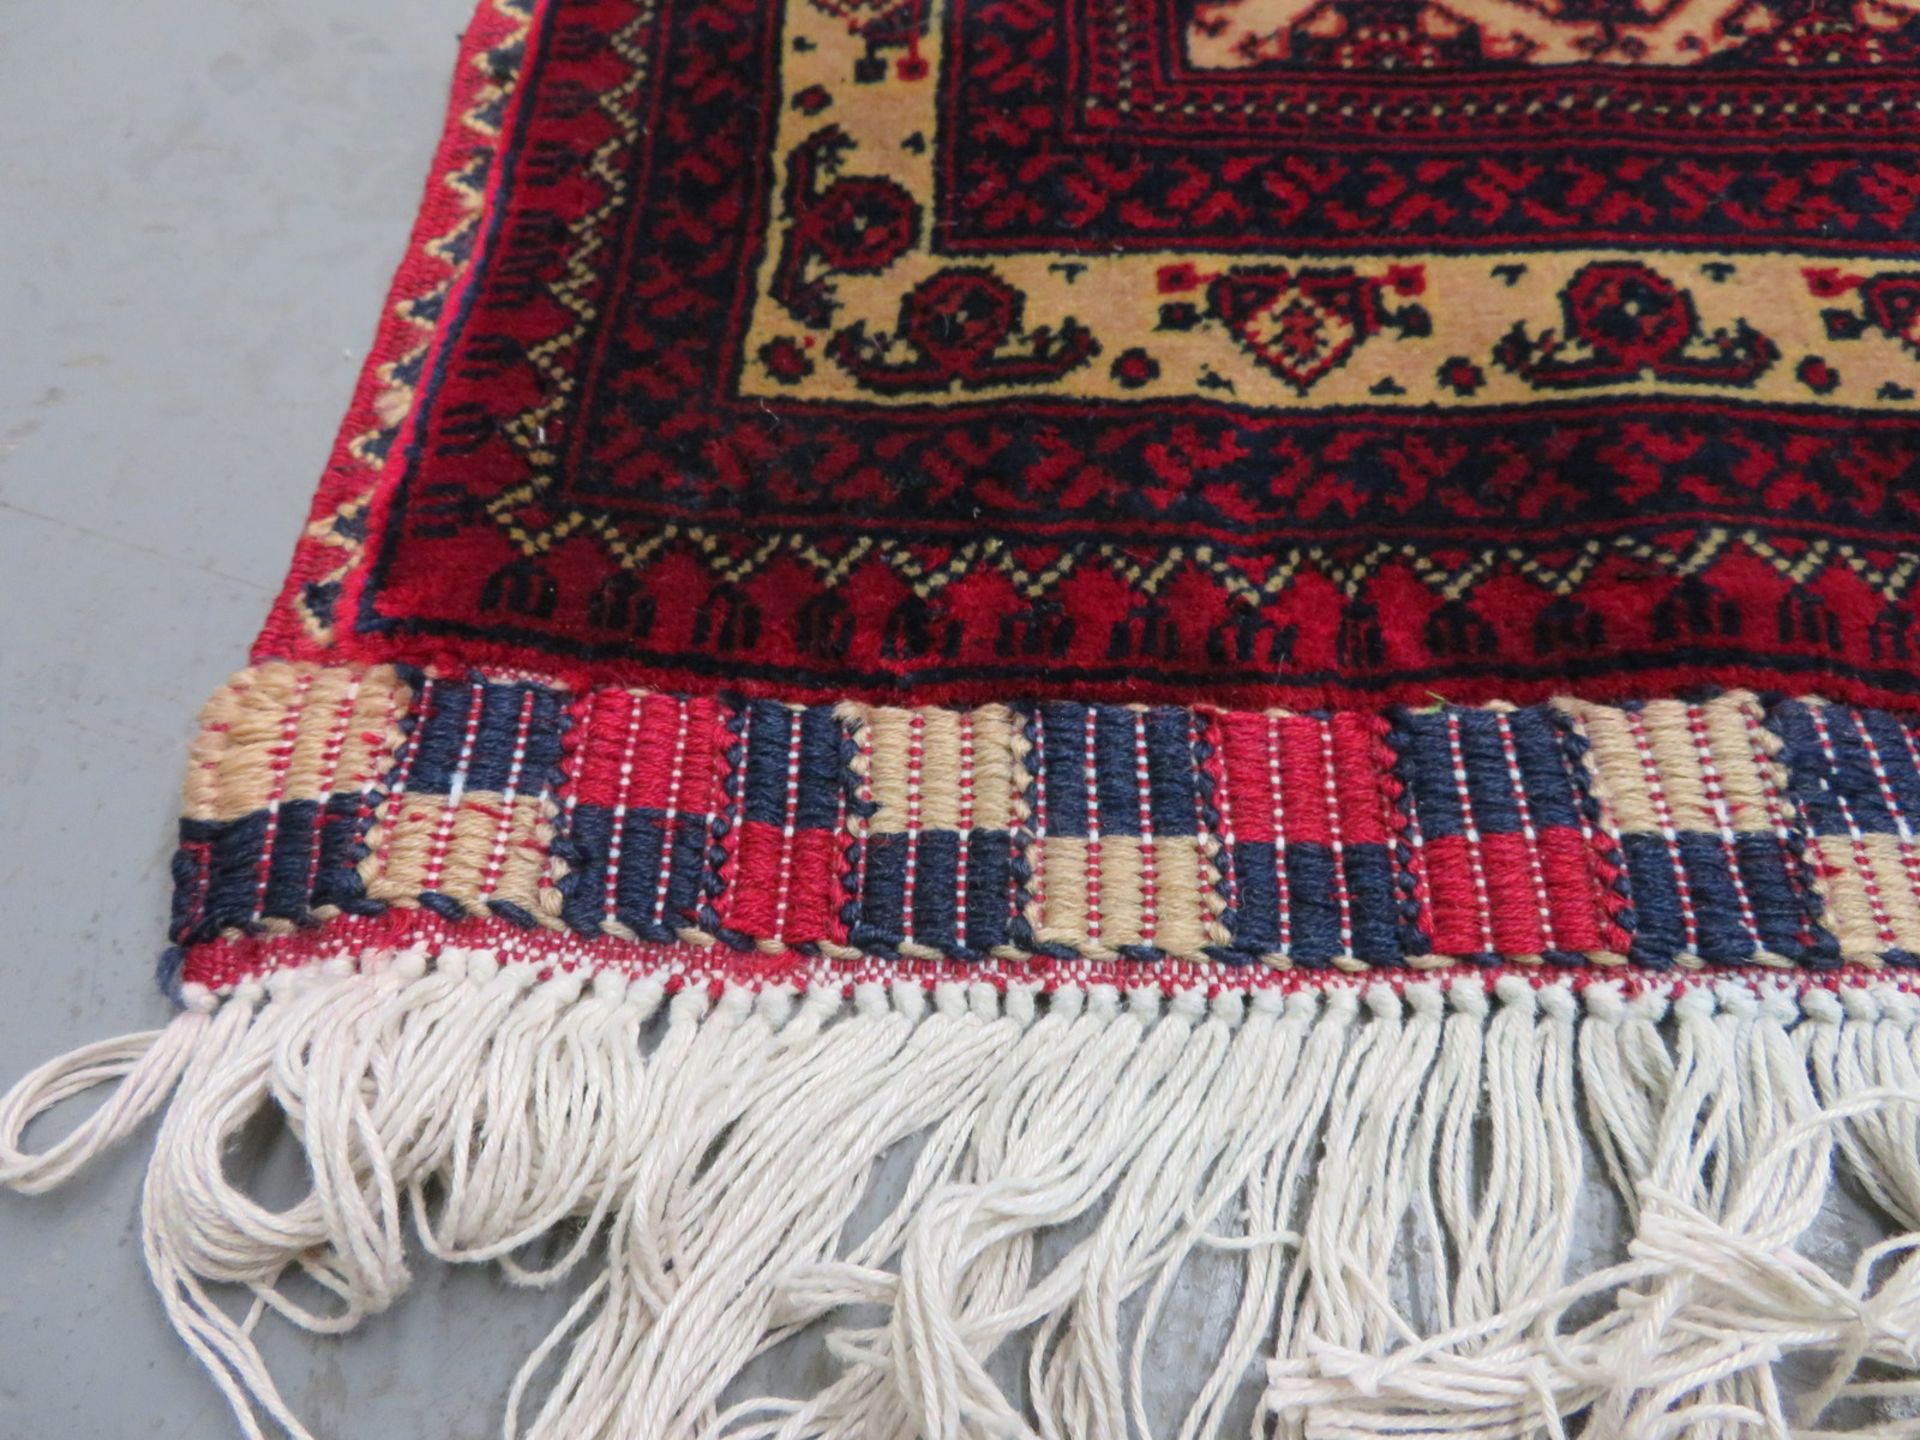 Khal Mohammadi 'Khawaja Roshnai' Afghan rug measures 3.5m L x 2.5m W - Image 7 of 13